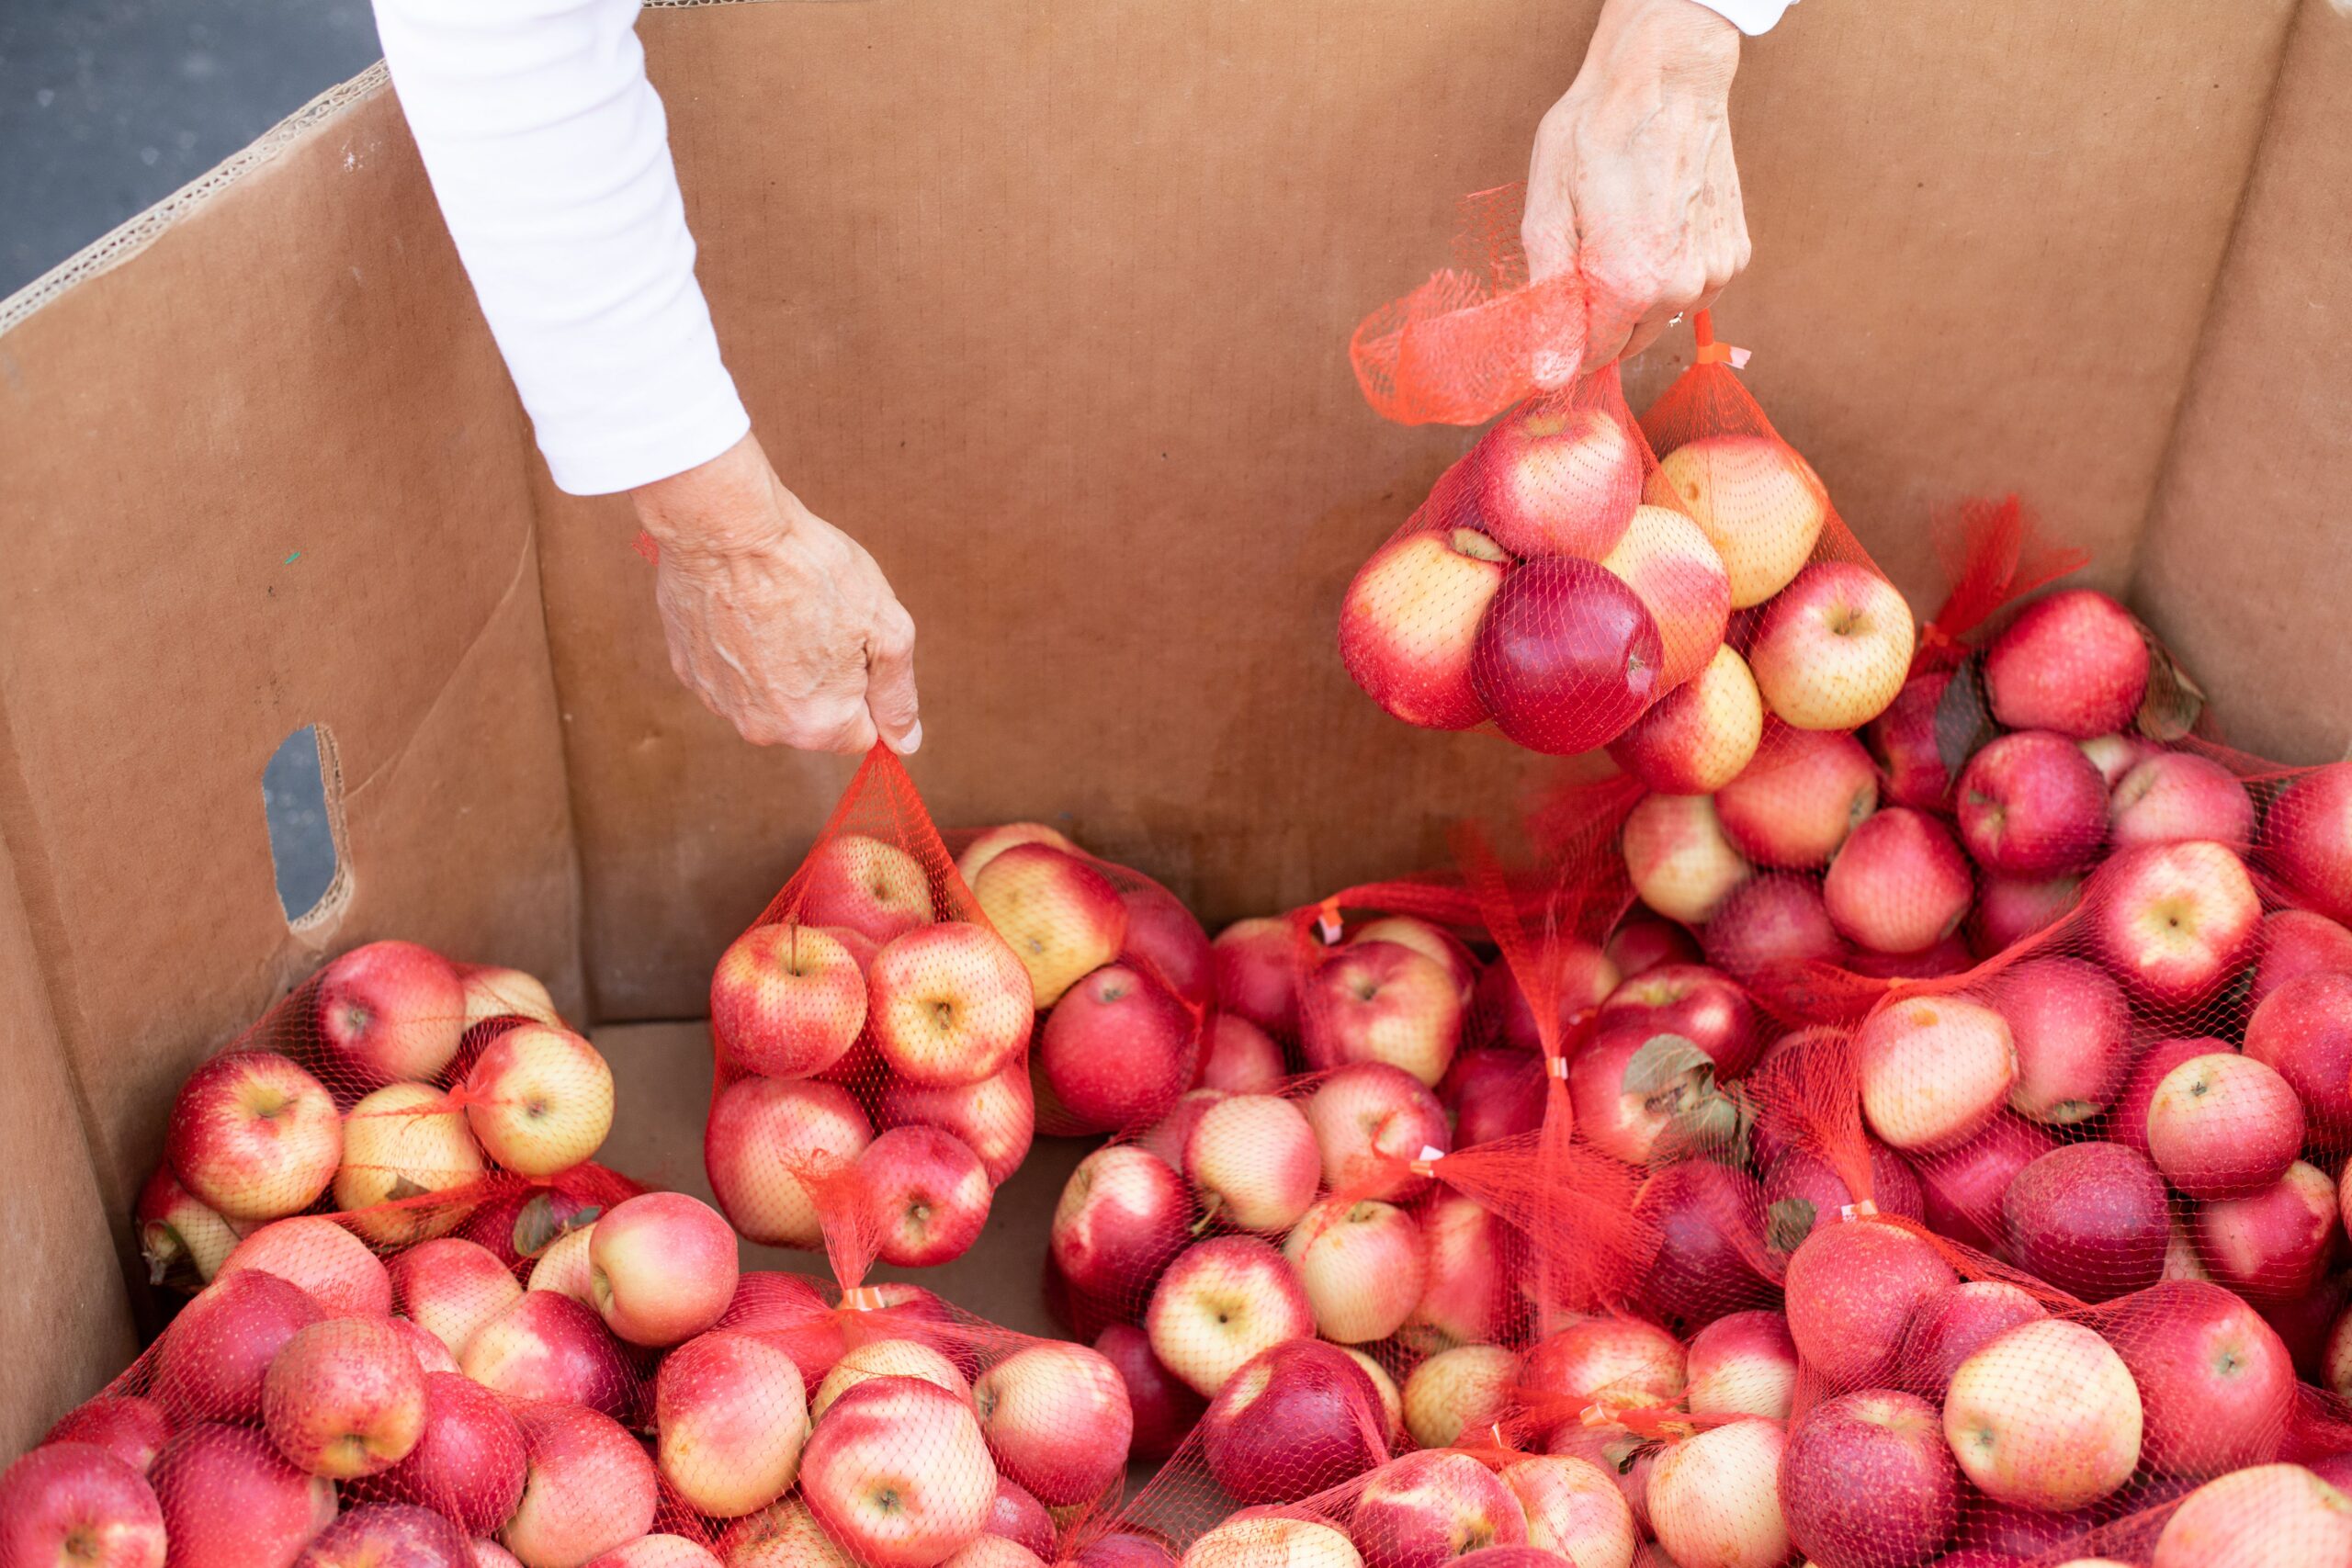 Volunteer holding apples